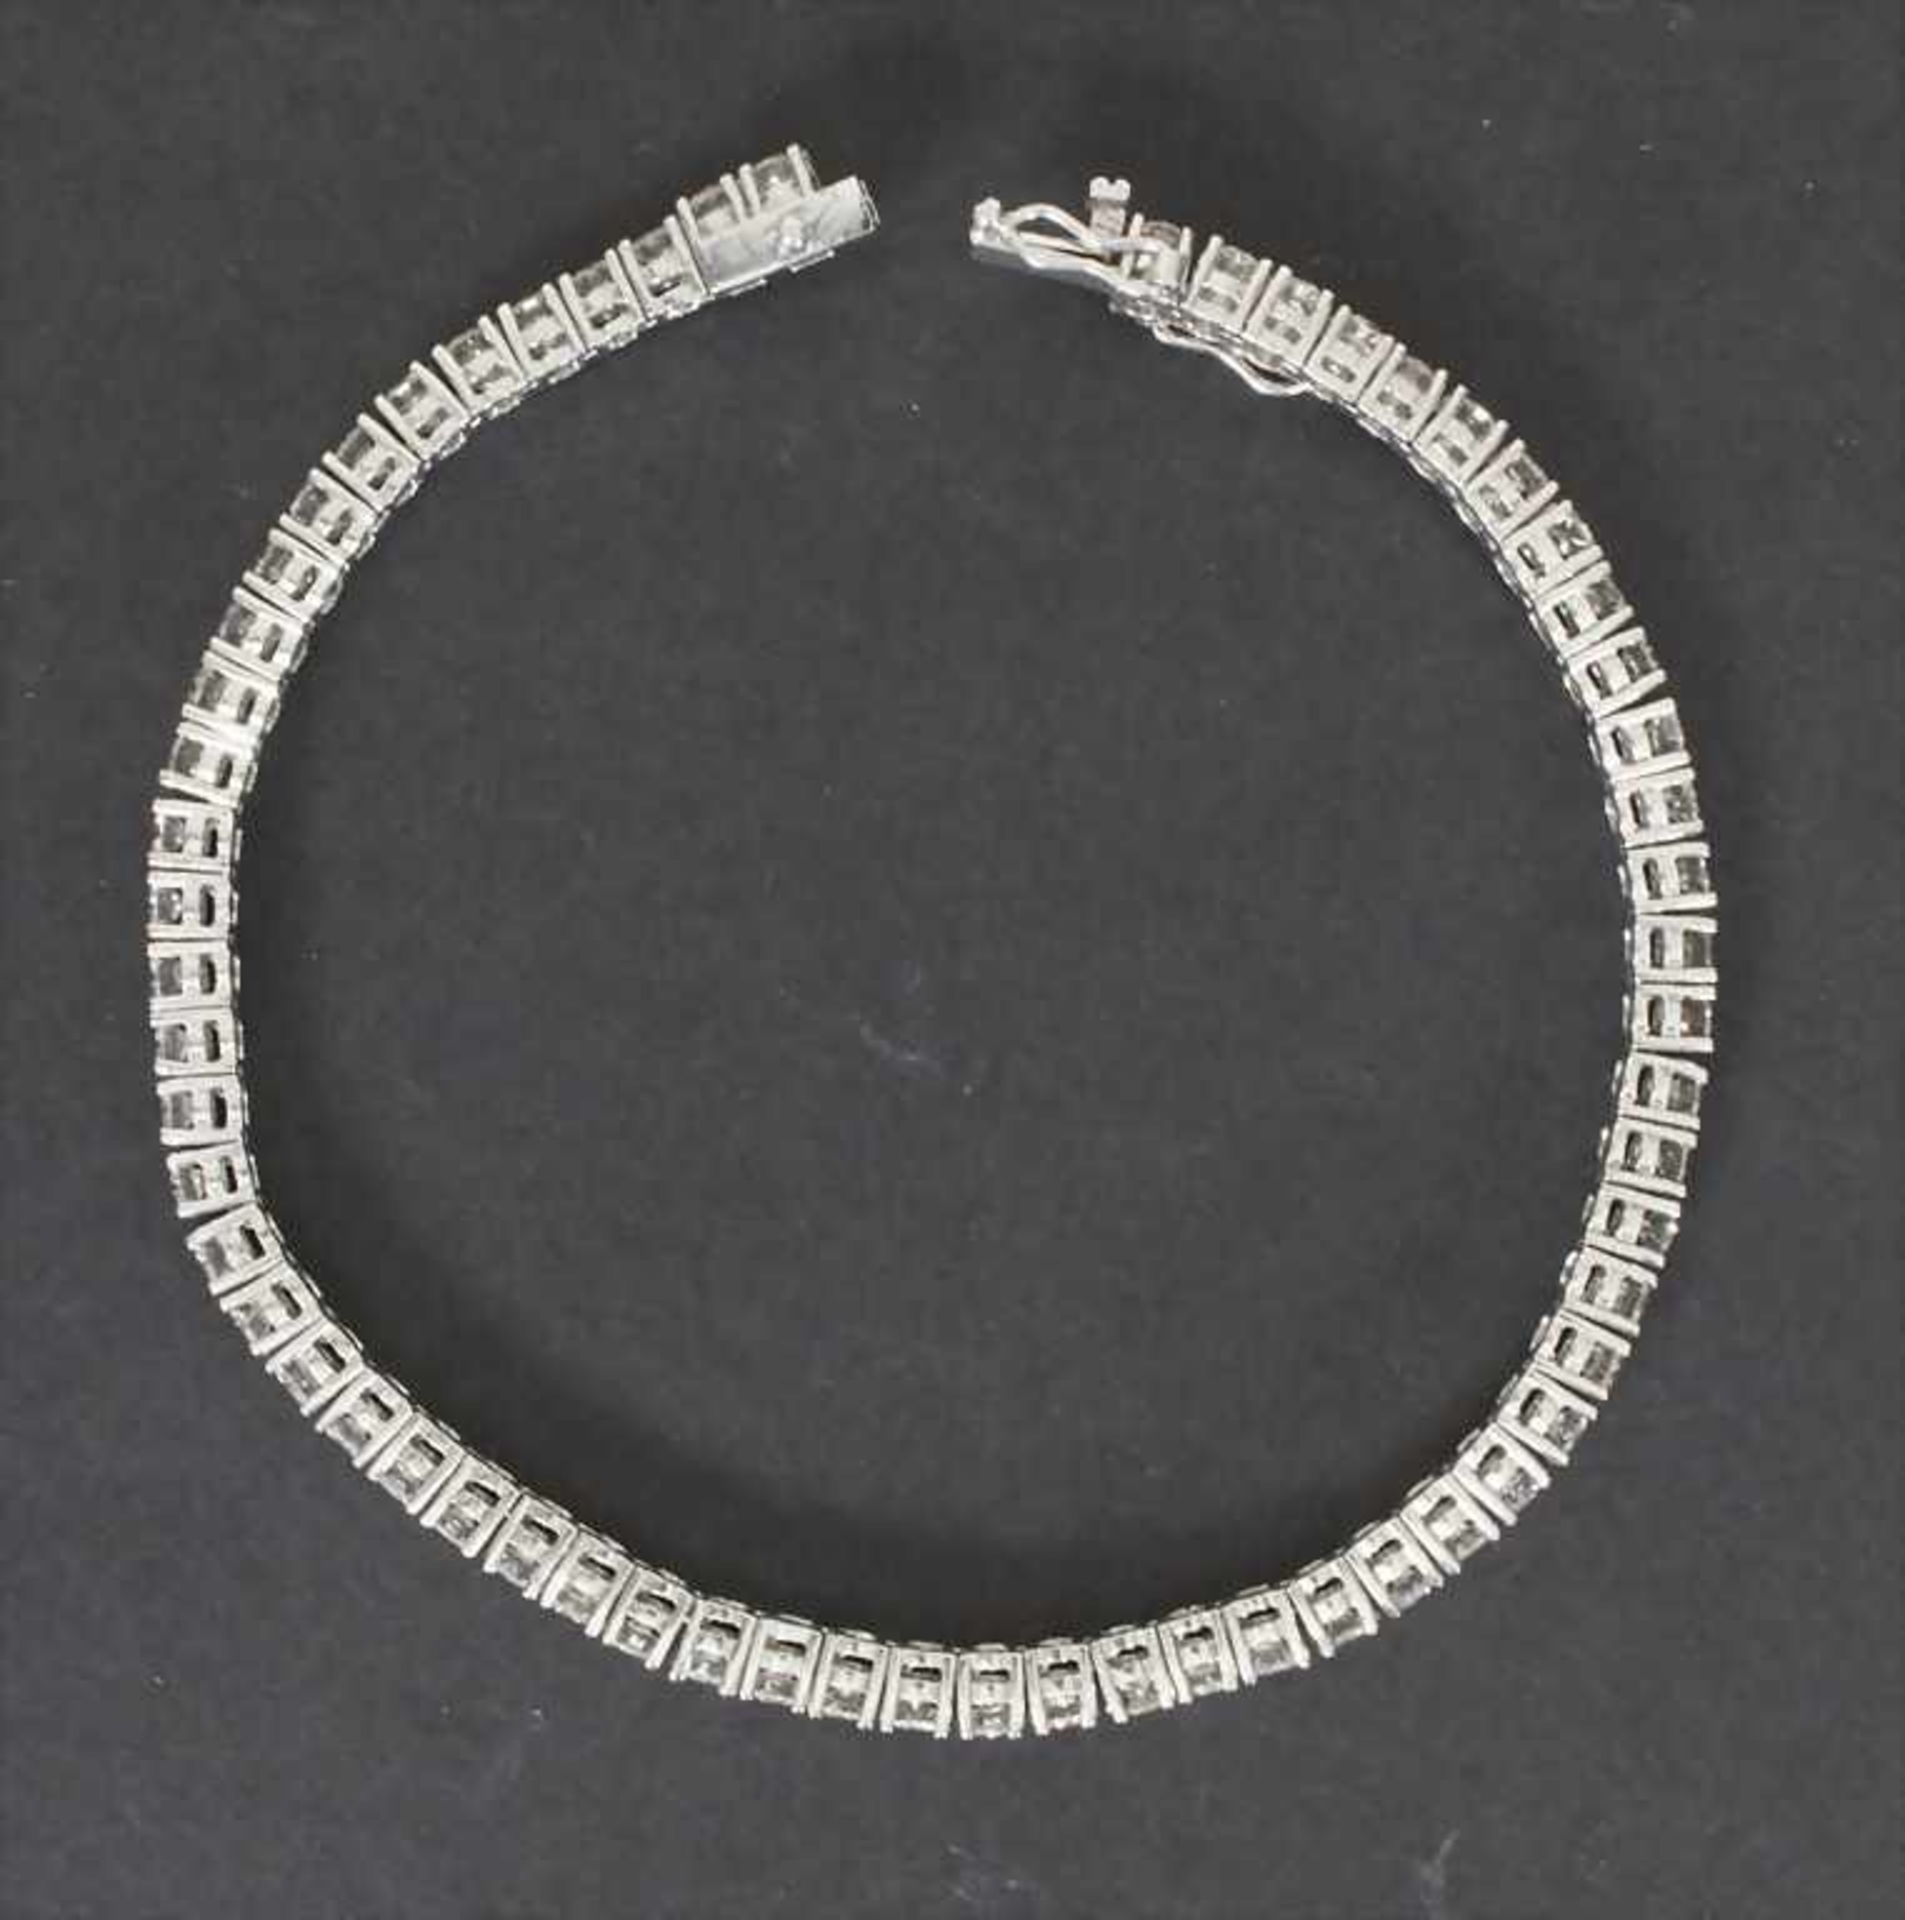 Tennisarmband mit Brillanten / A ladies bracelet mit brilliantsMaterial: Weißgold Au 585/000 14